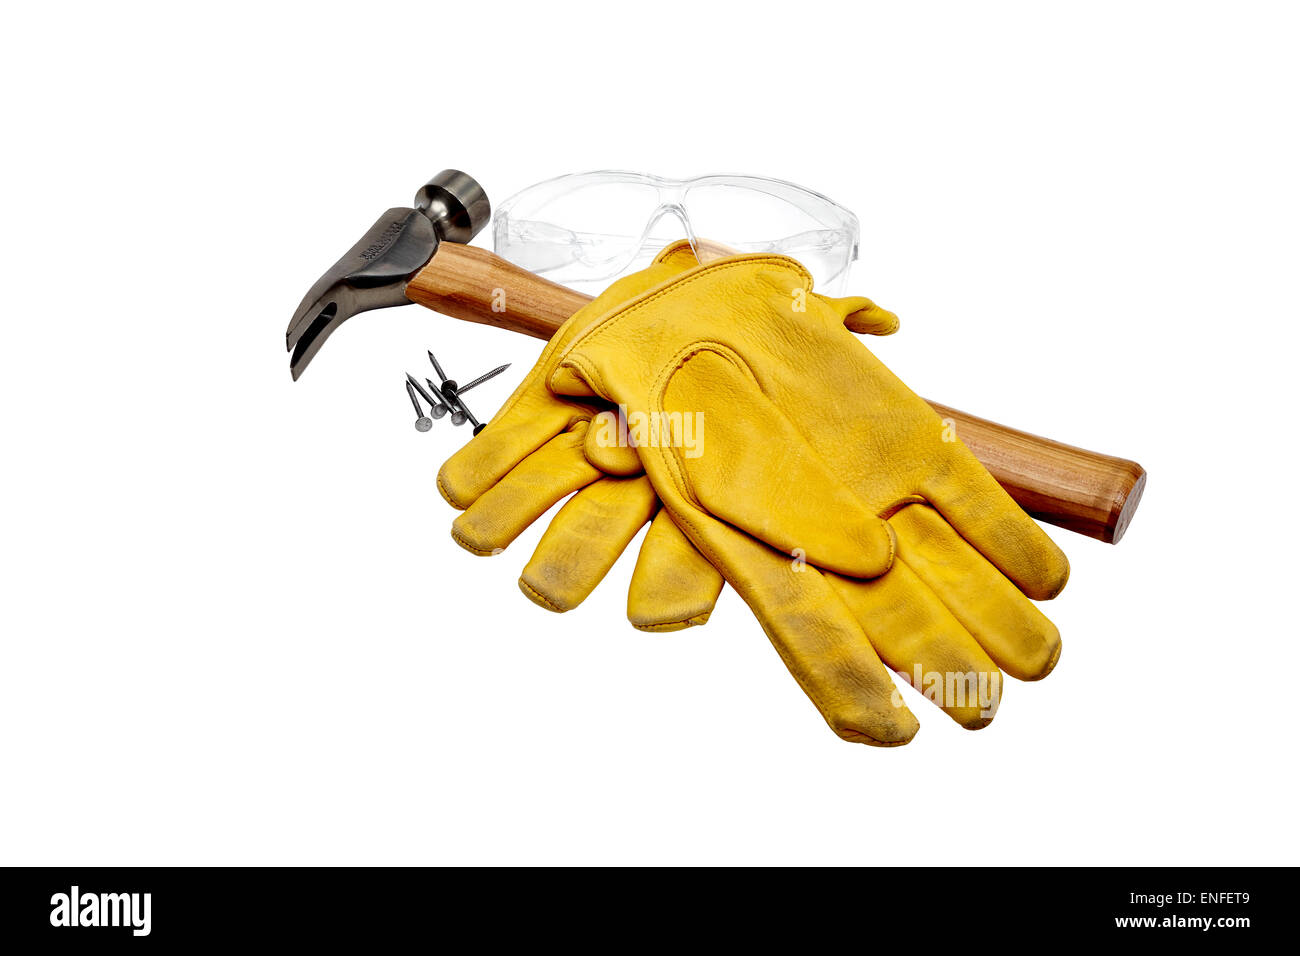 Foto von einem Hammer, Nägel, Arbeitshandschuhe und Schutzbrille isoliert auf weiss. Stockfoto